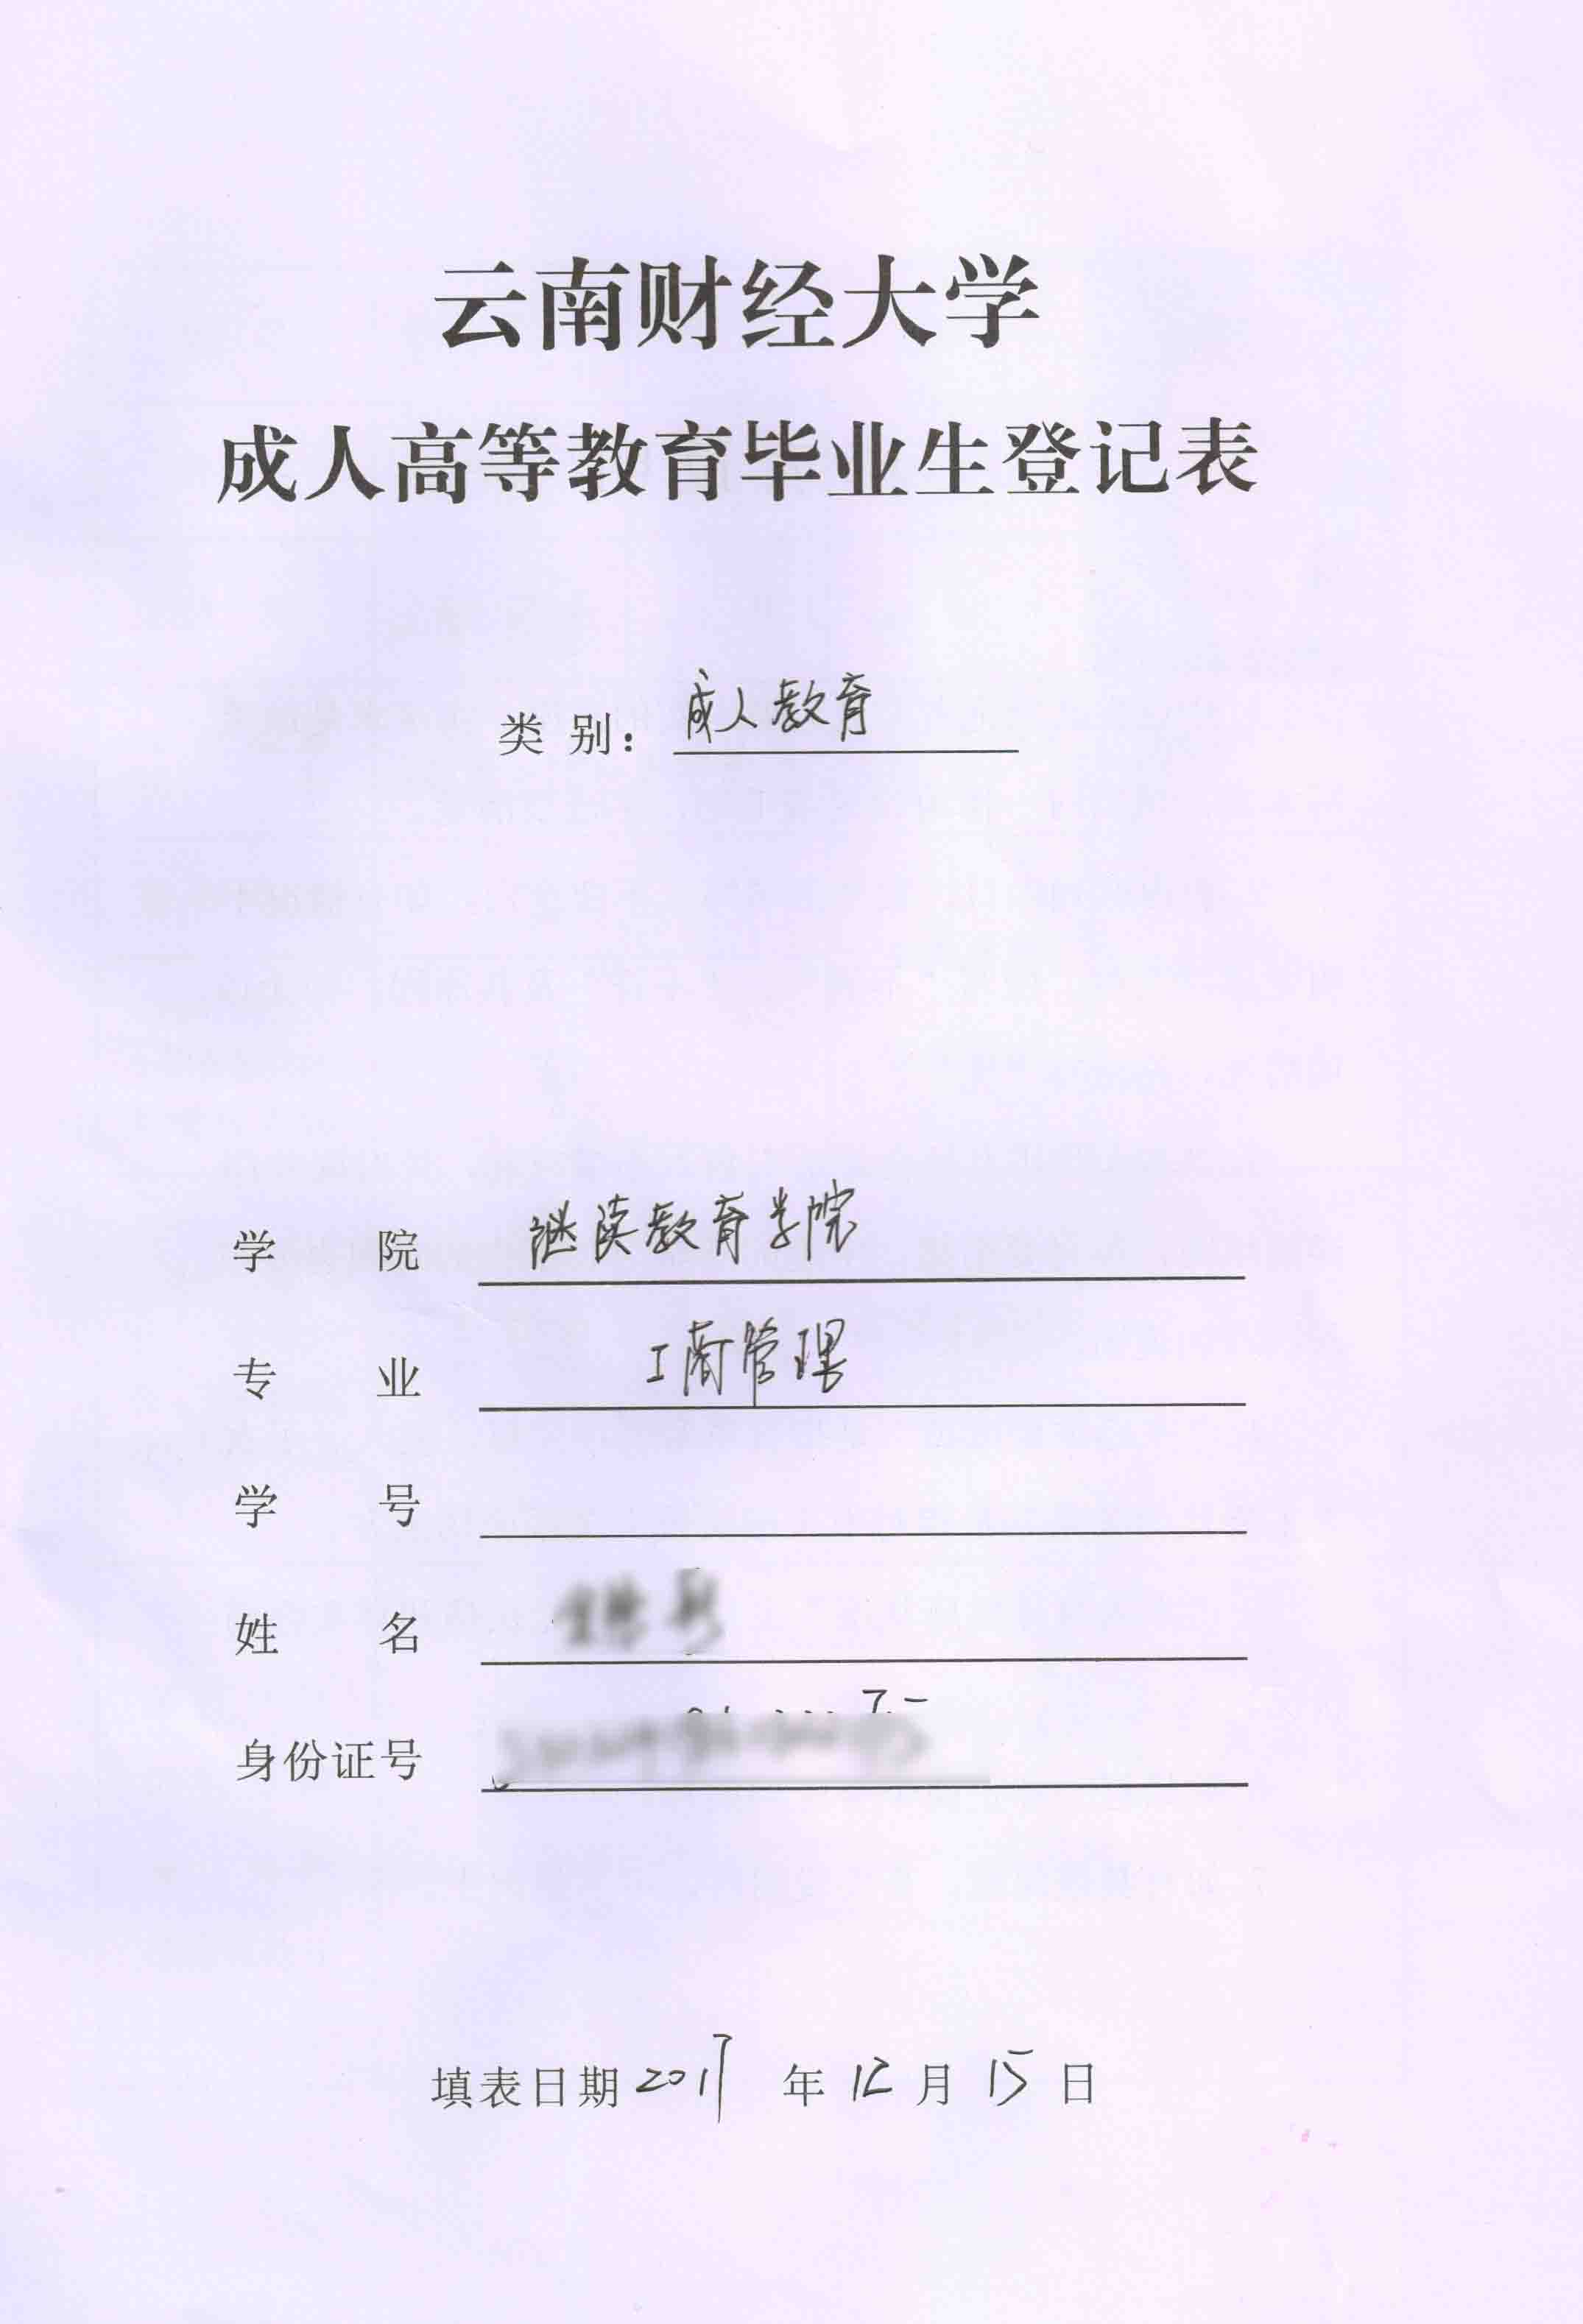 云南财经大学函授毕业生登记表填写模板 